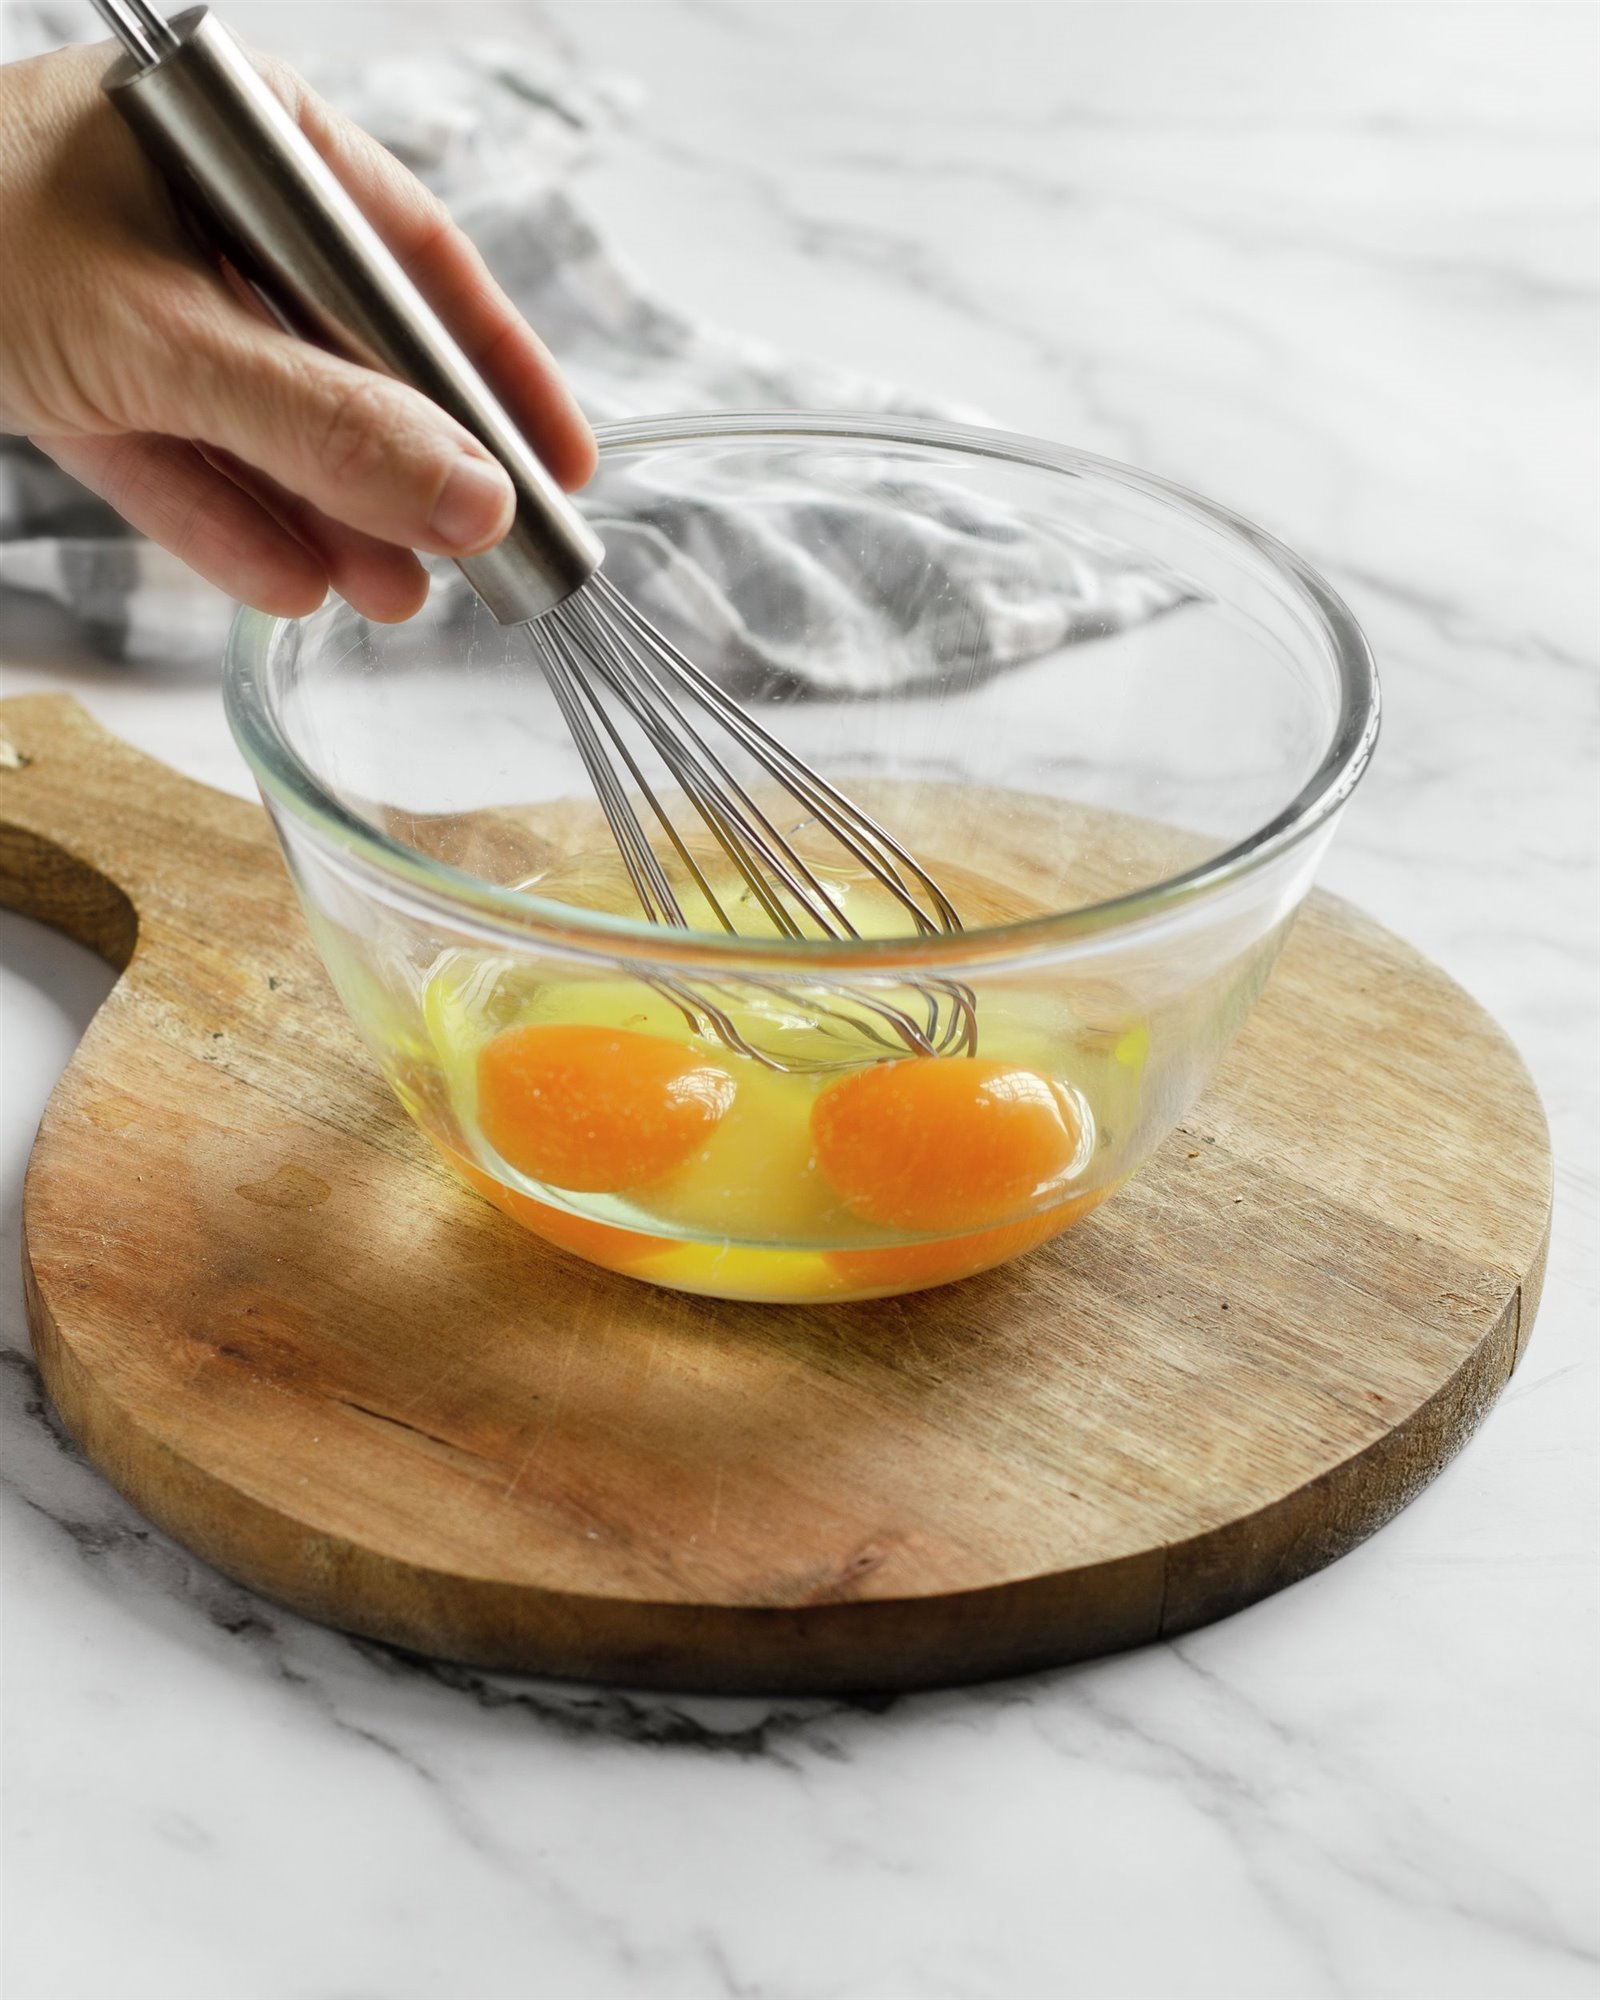 2. Bate los huevos para el rebozado